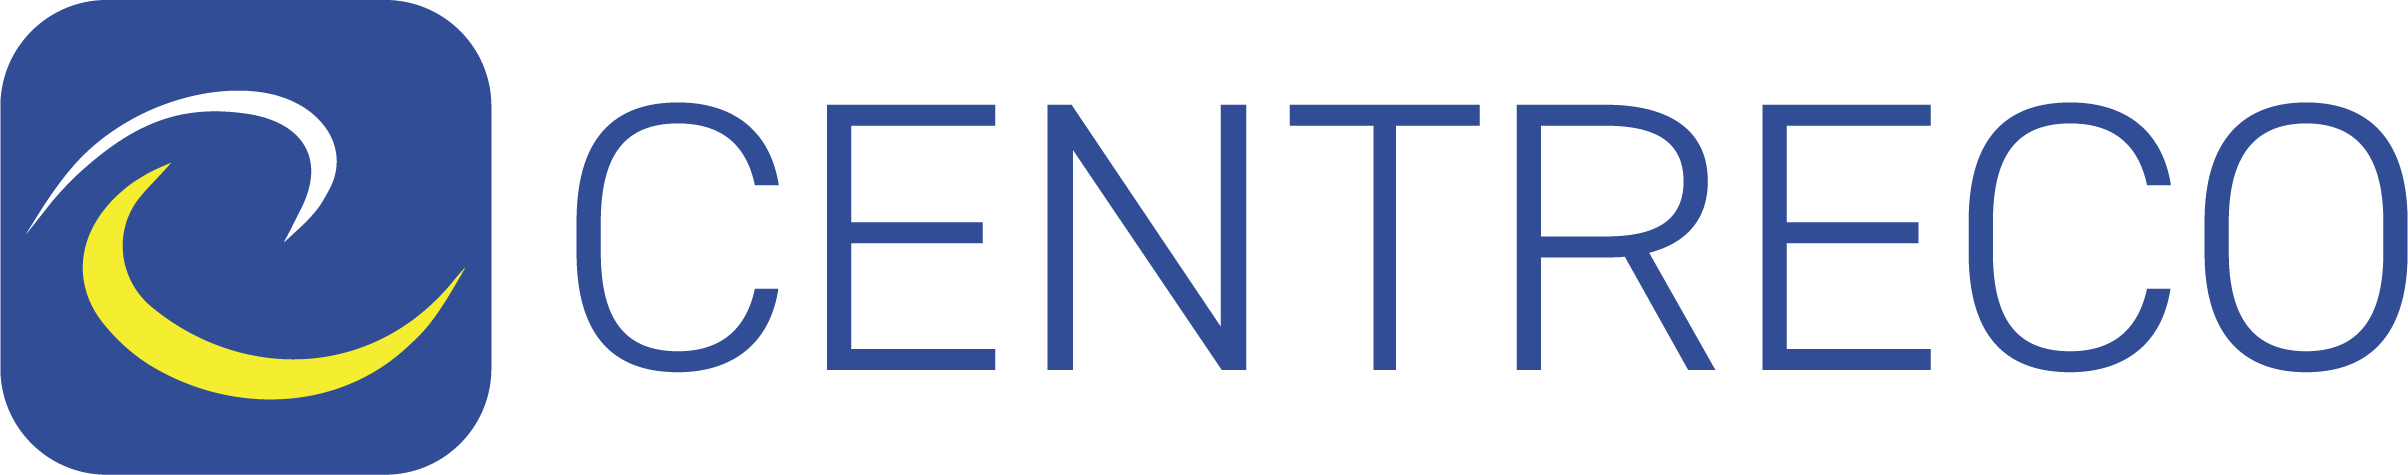 Centreco Logo